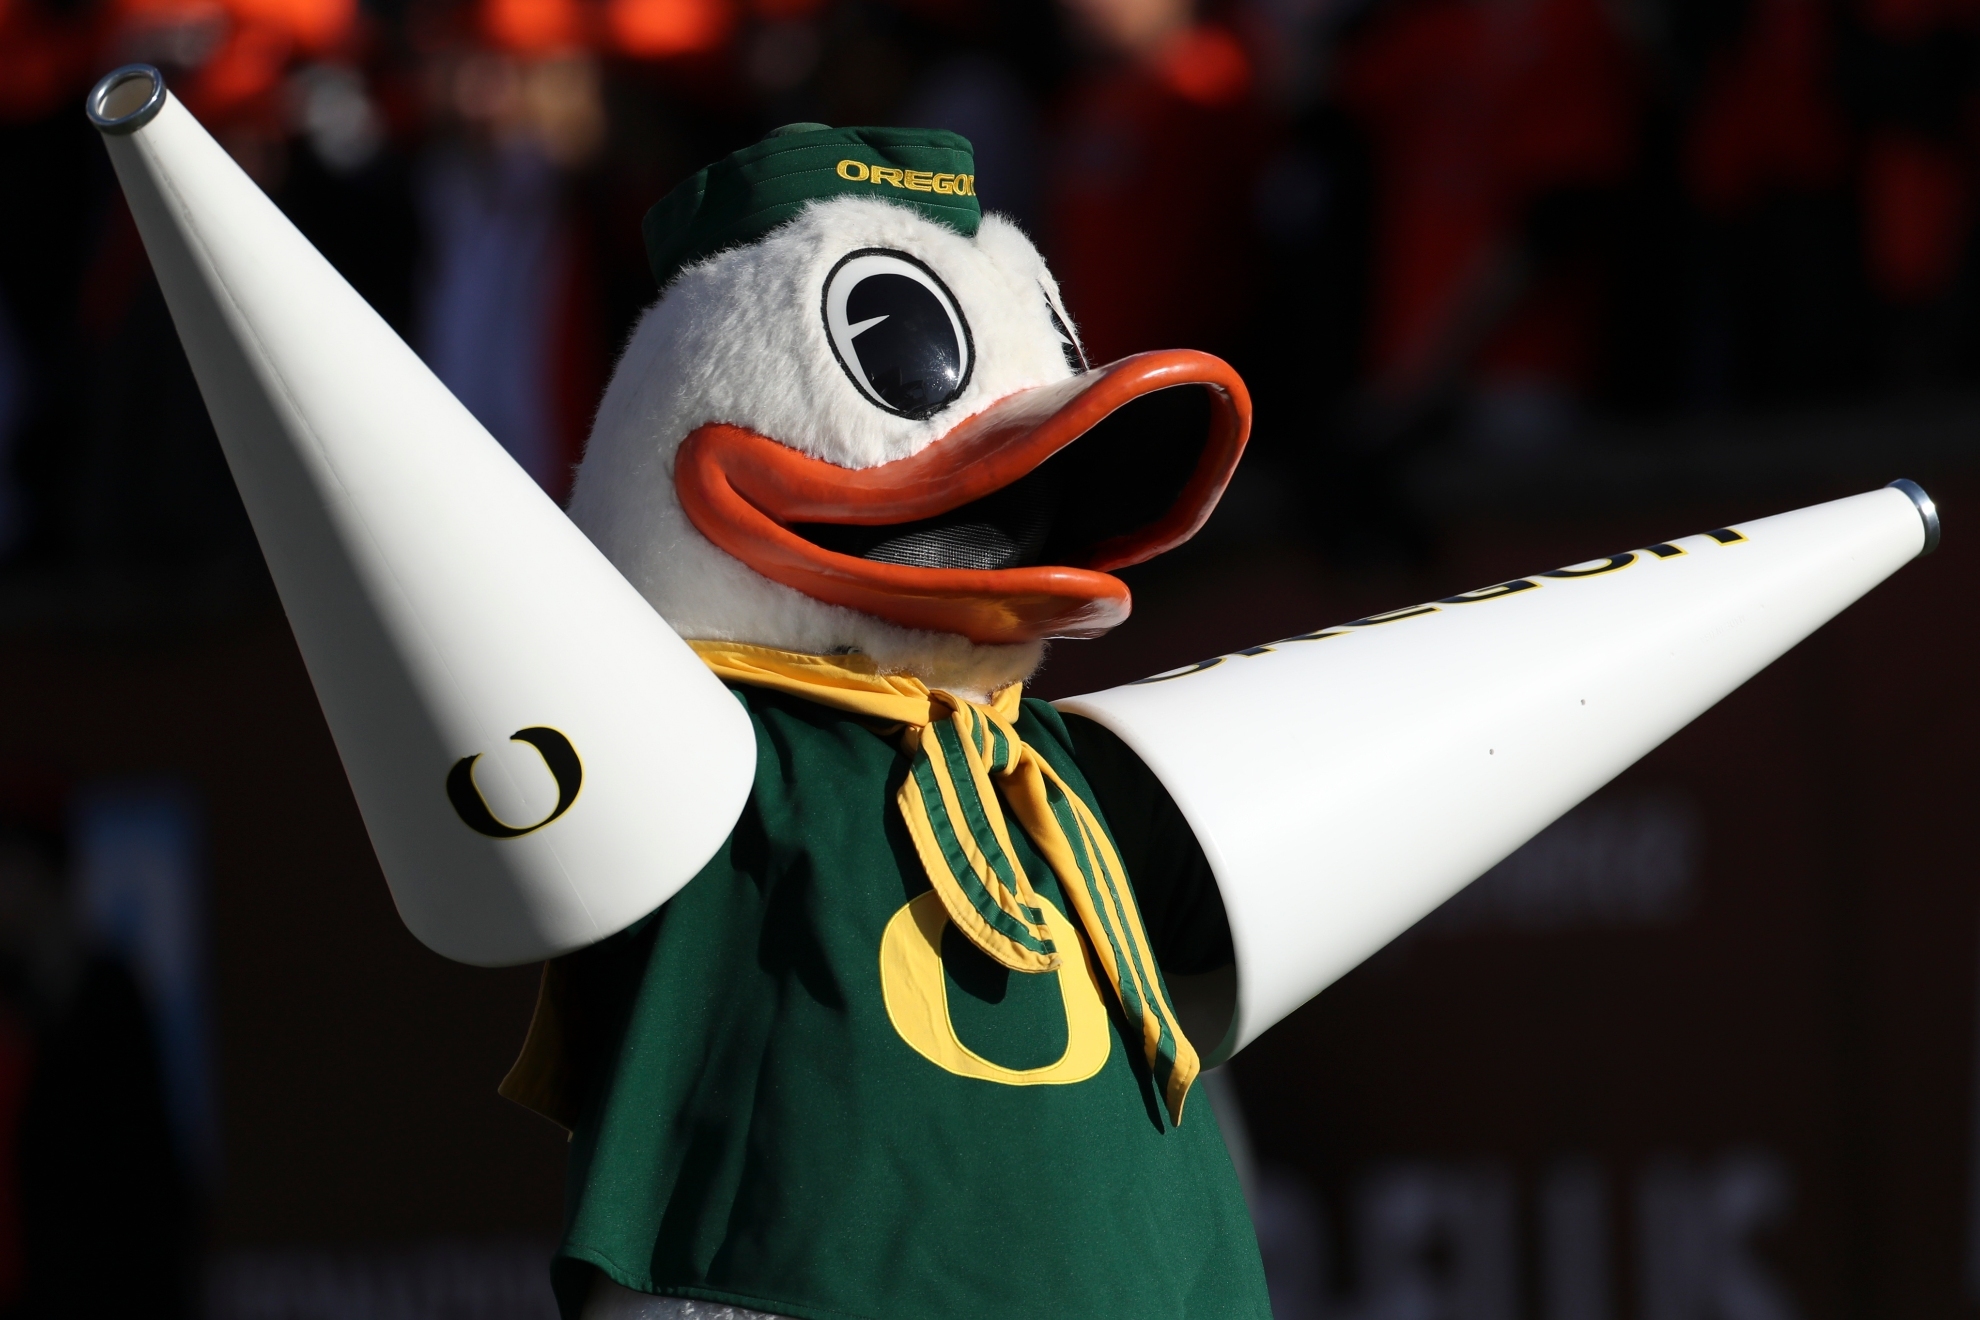 Oregon Ducks' mascot.